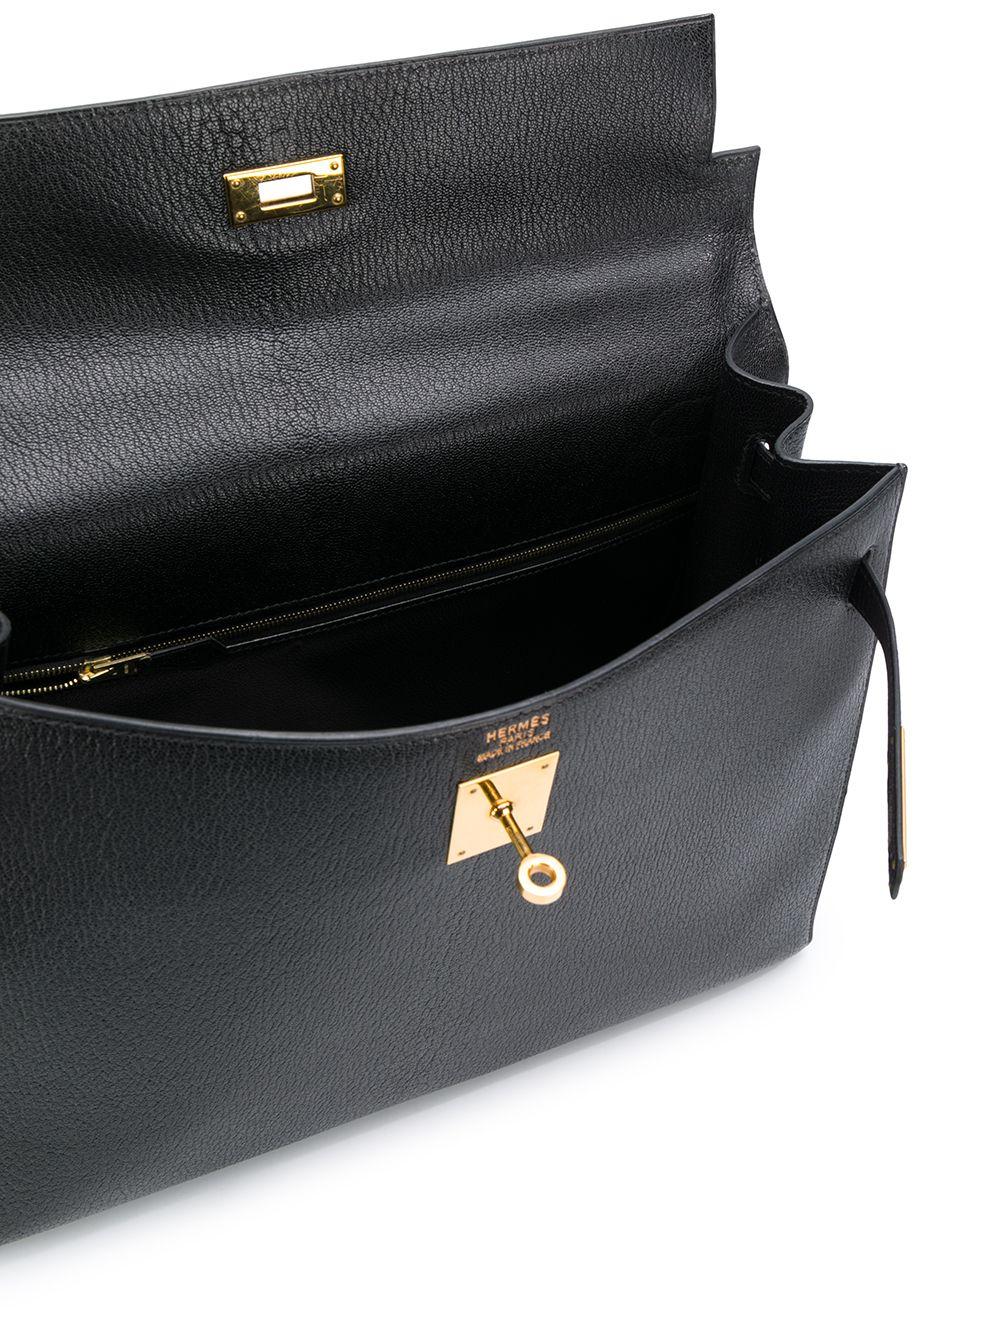 Hermès Black 35cm Kelly Sellier Bag 1